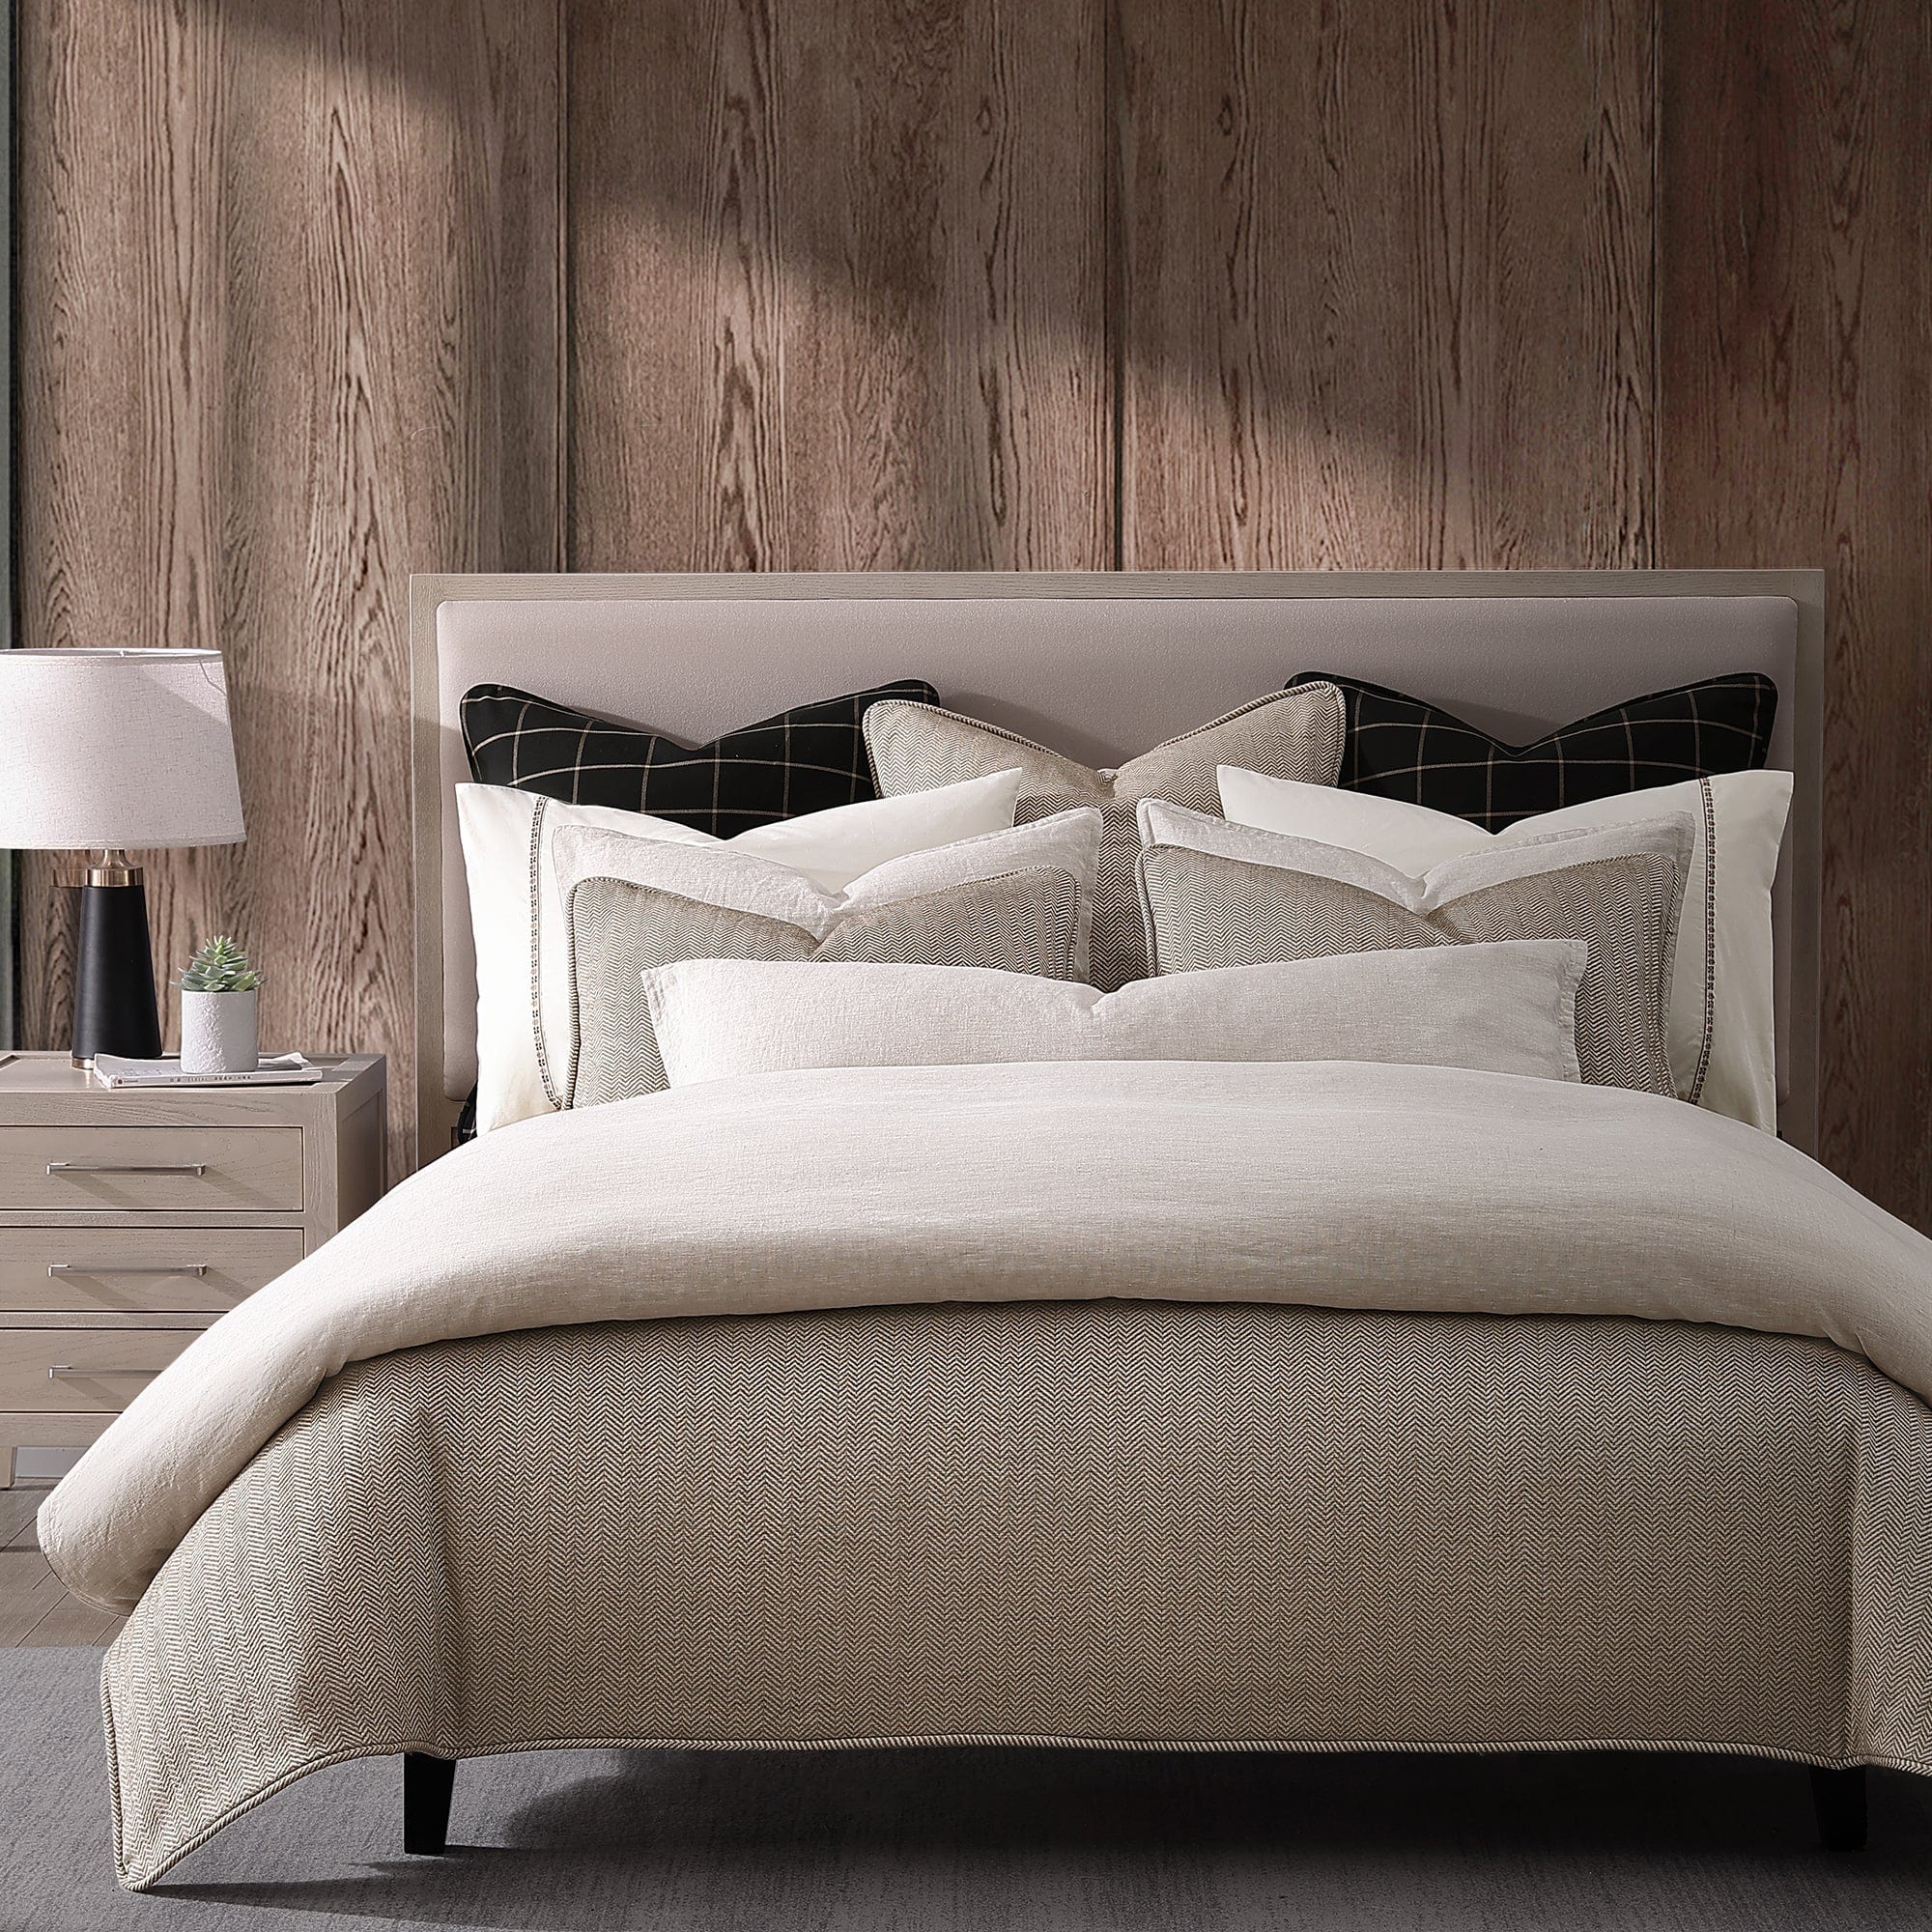 Chenille Herringbone Bedding Set Comforter / Duvet Cover